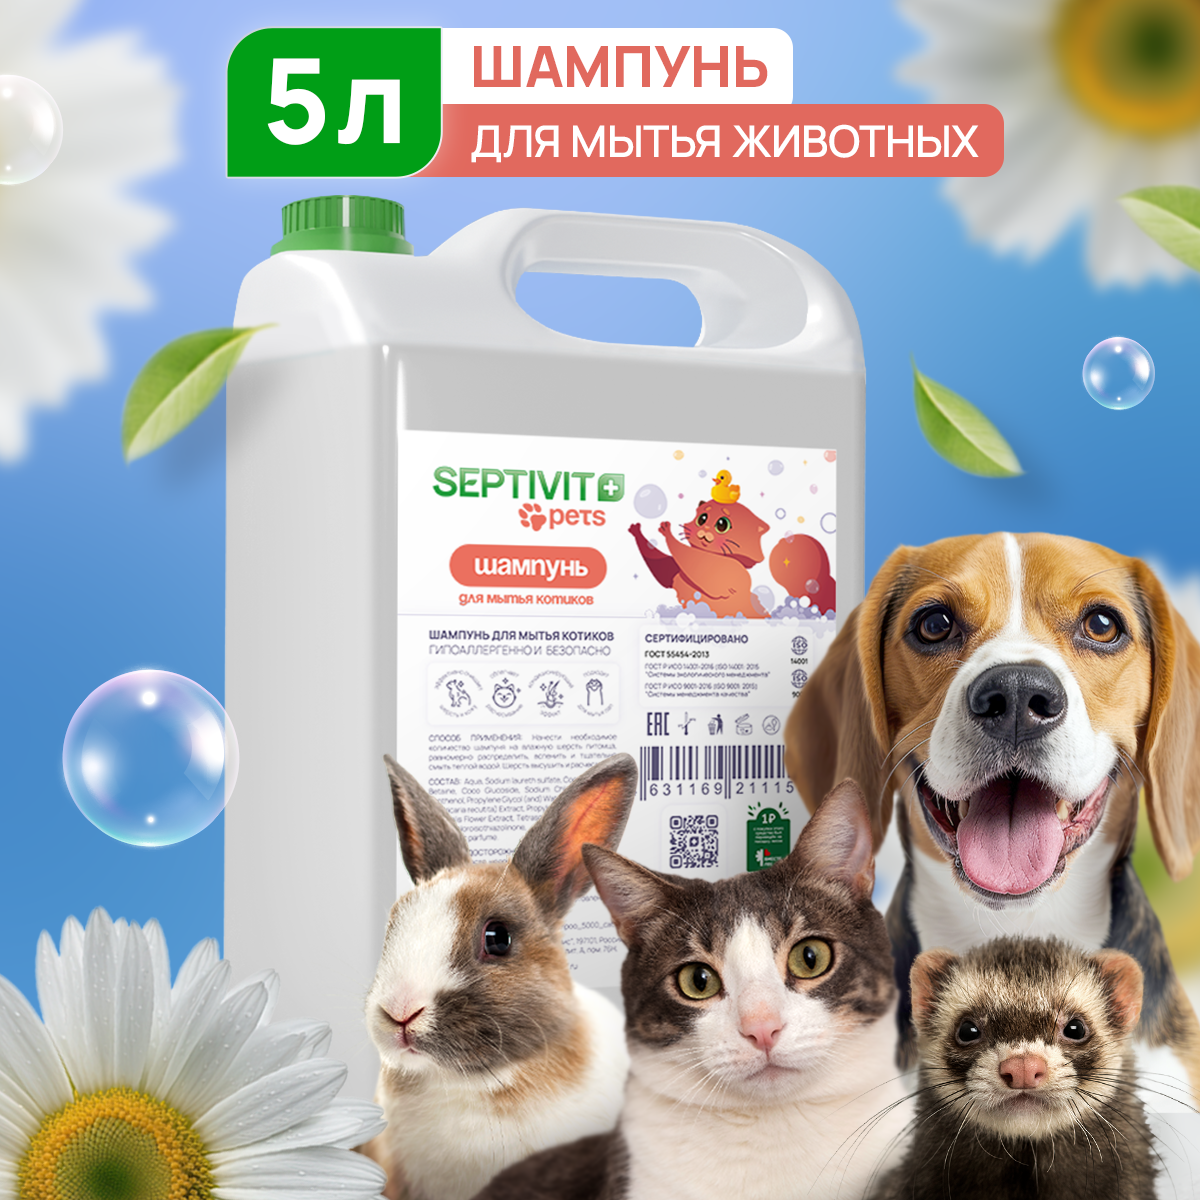 Шампунь для животных Septivit Premium, 5 л